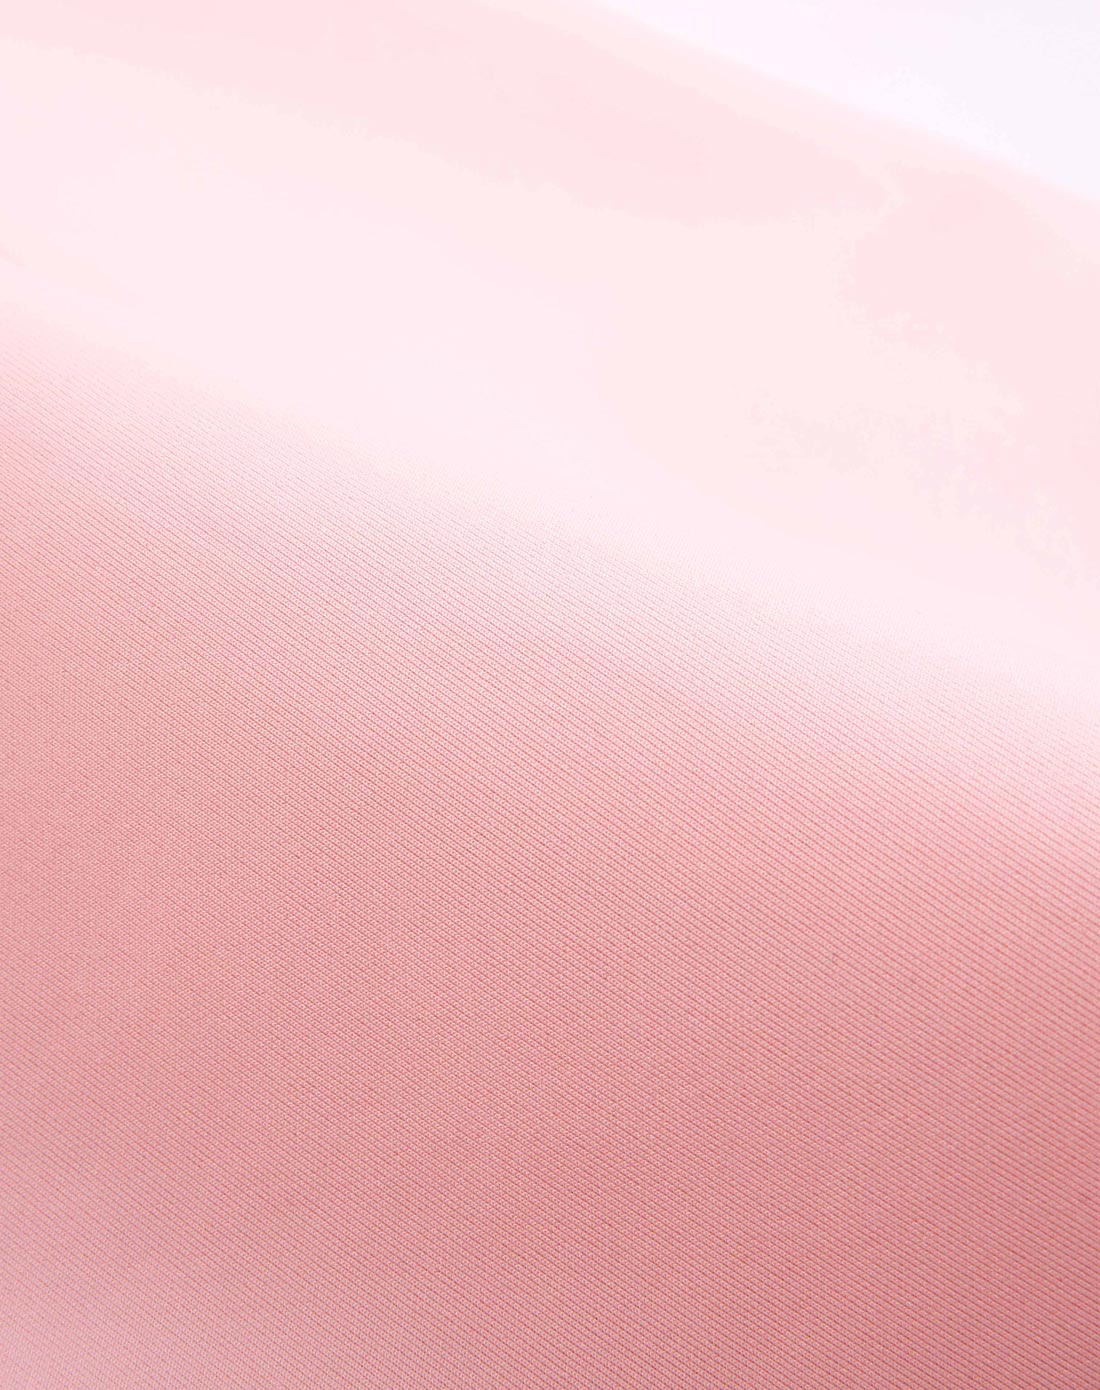 淡粉色纯色高清图片